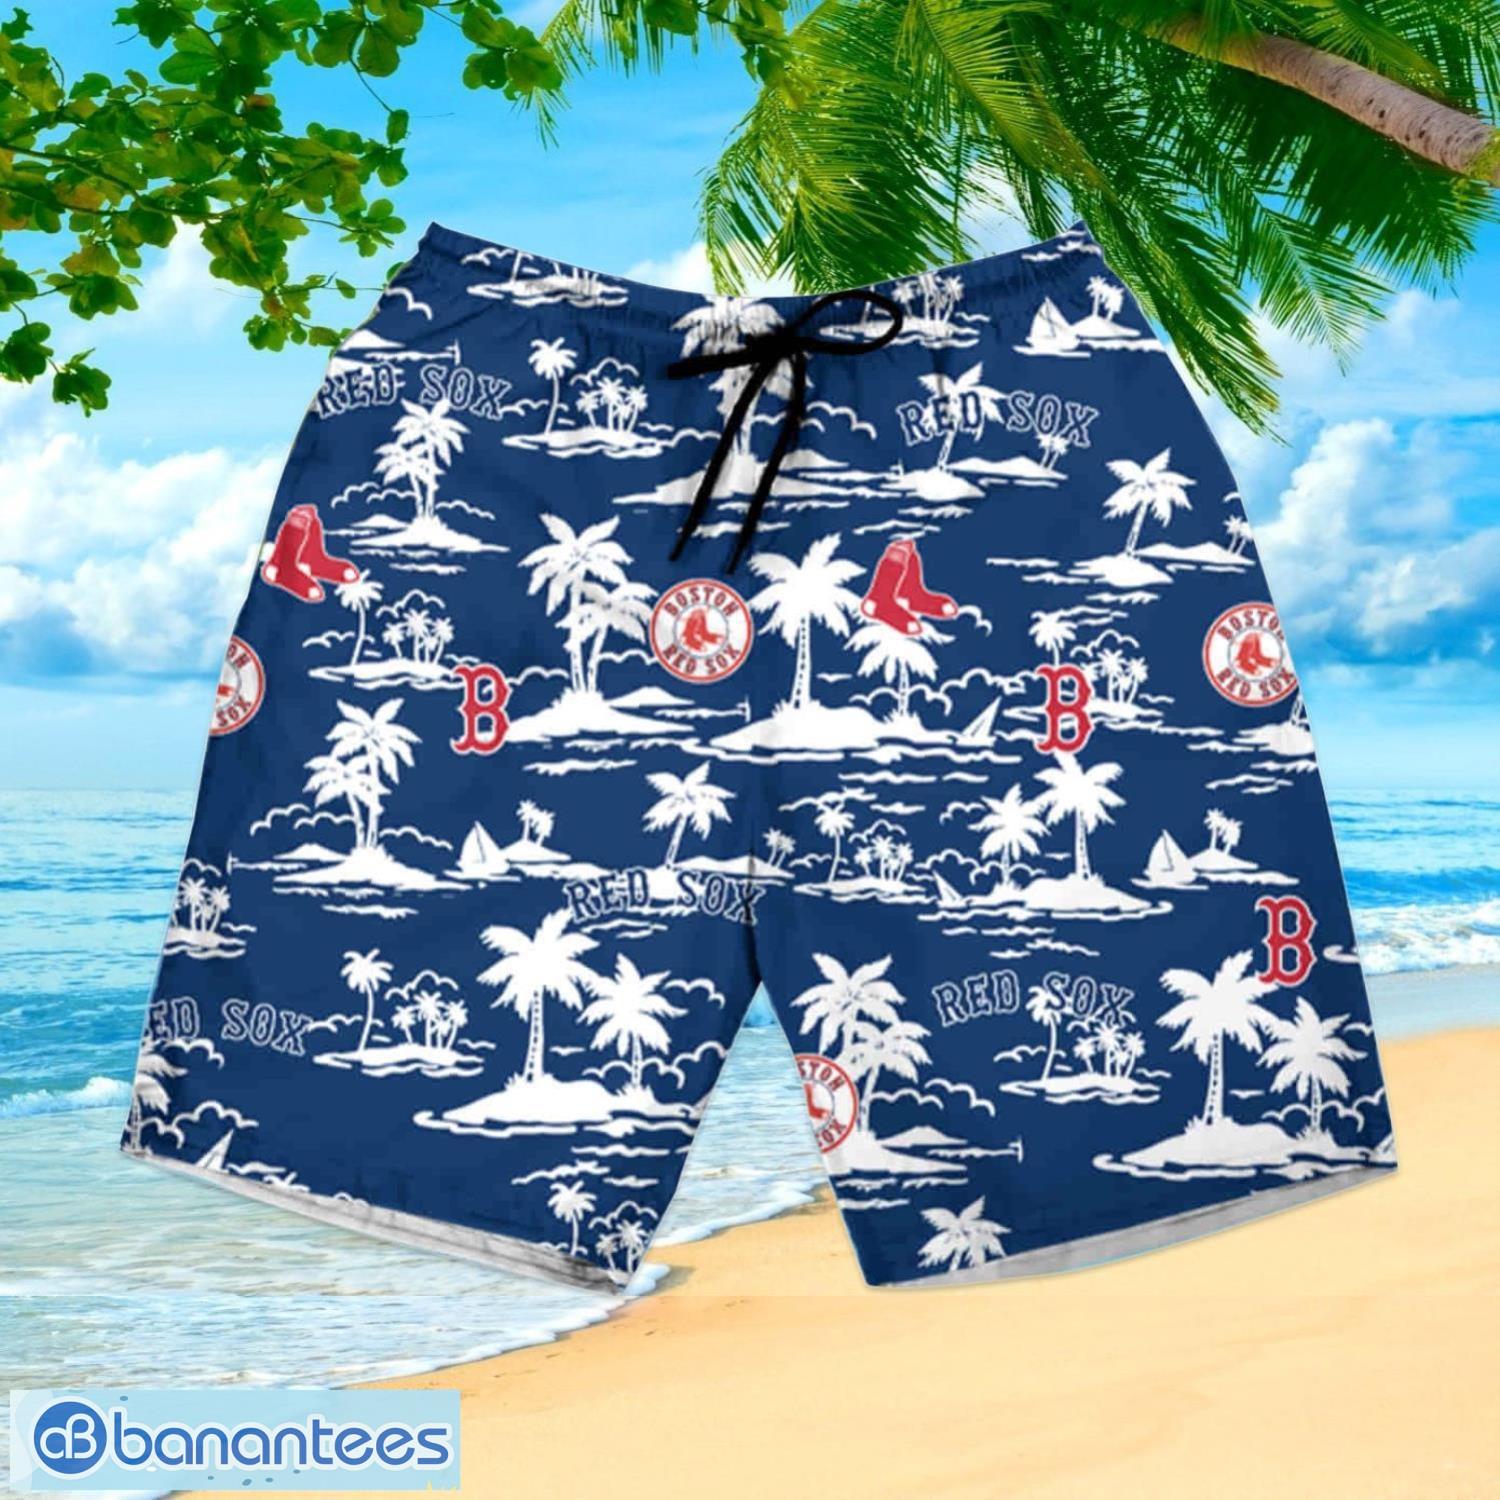 Boston Red Sox Vintage Mlb Hawaiian Shirt And Shorts Happy Summer Gift For  Fans - Banantees